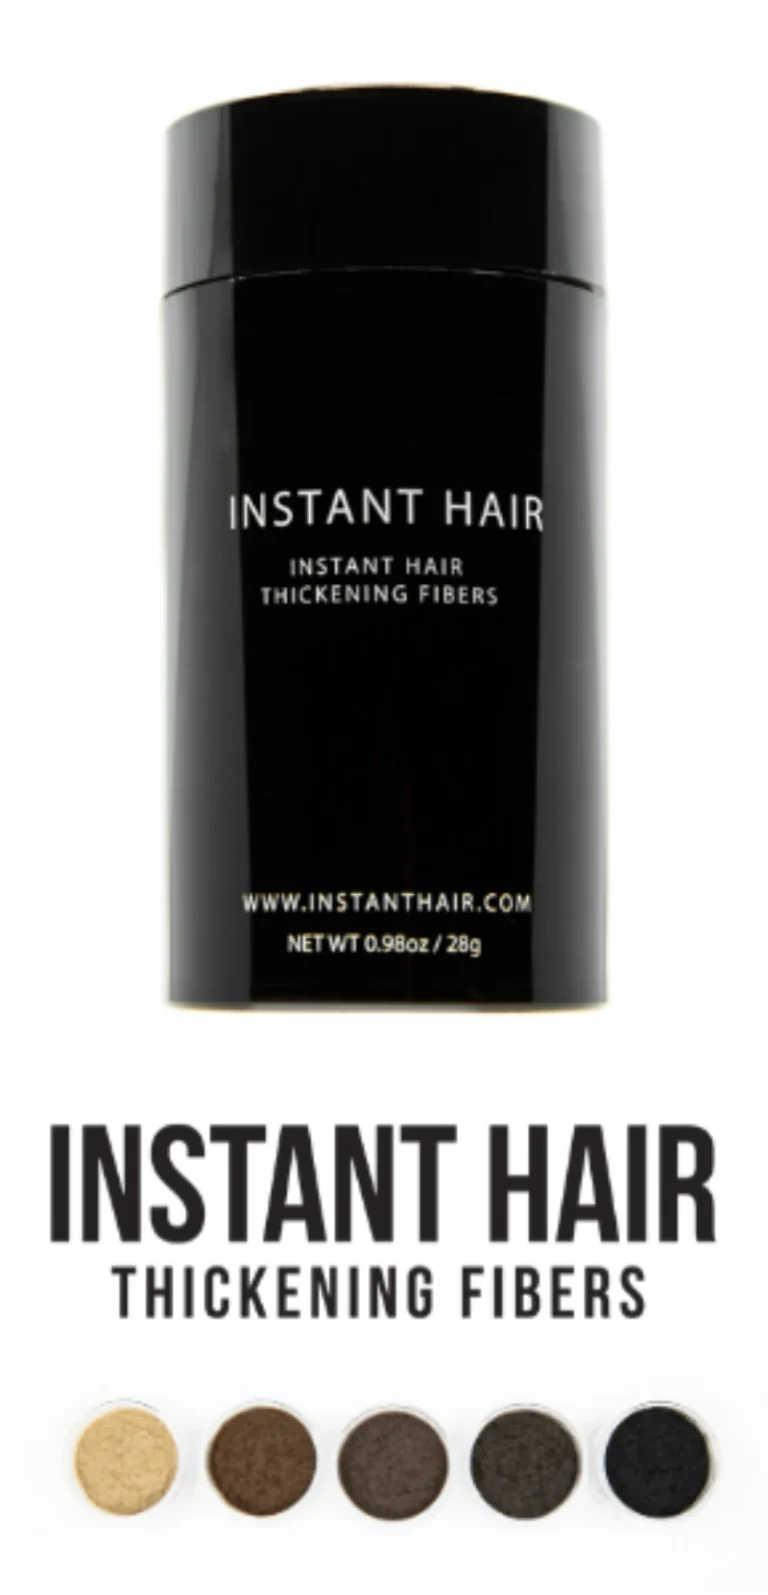 Instant Hair Cross Promo Banner